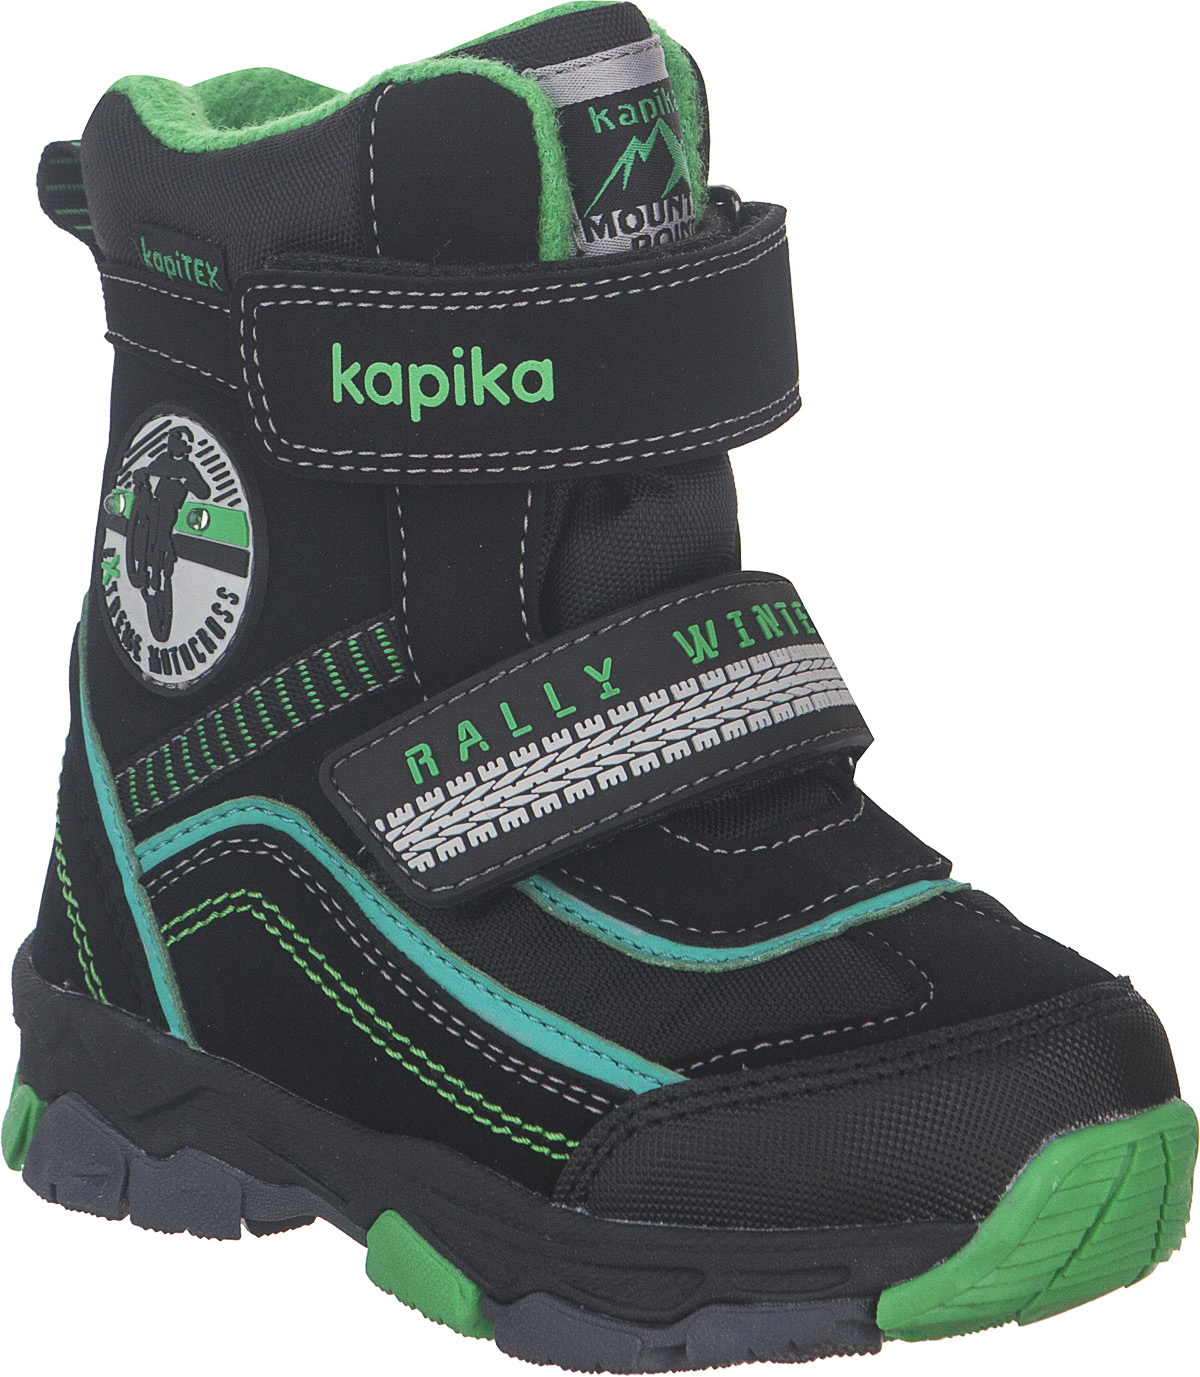 Ботинки для мальчика Kapika KapiTEX, цвет: черный, зеленый. 41230-1. Размер 26